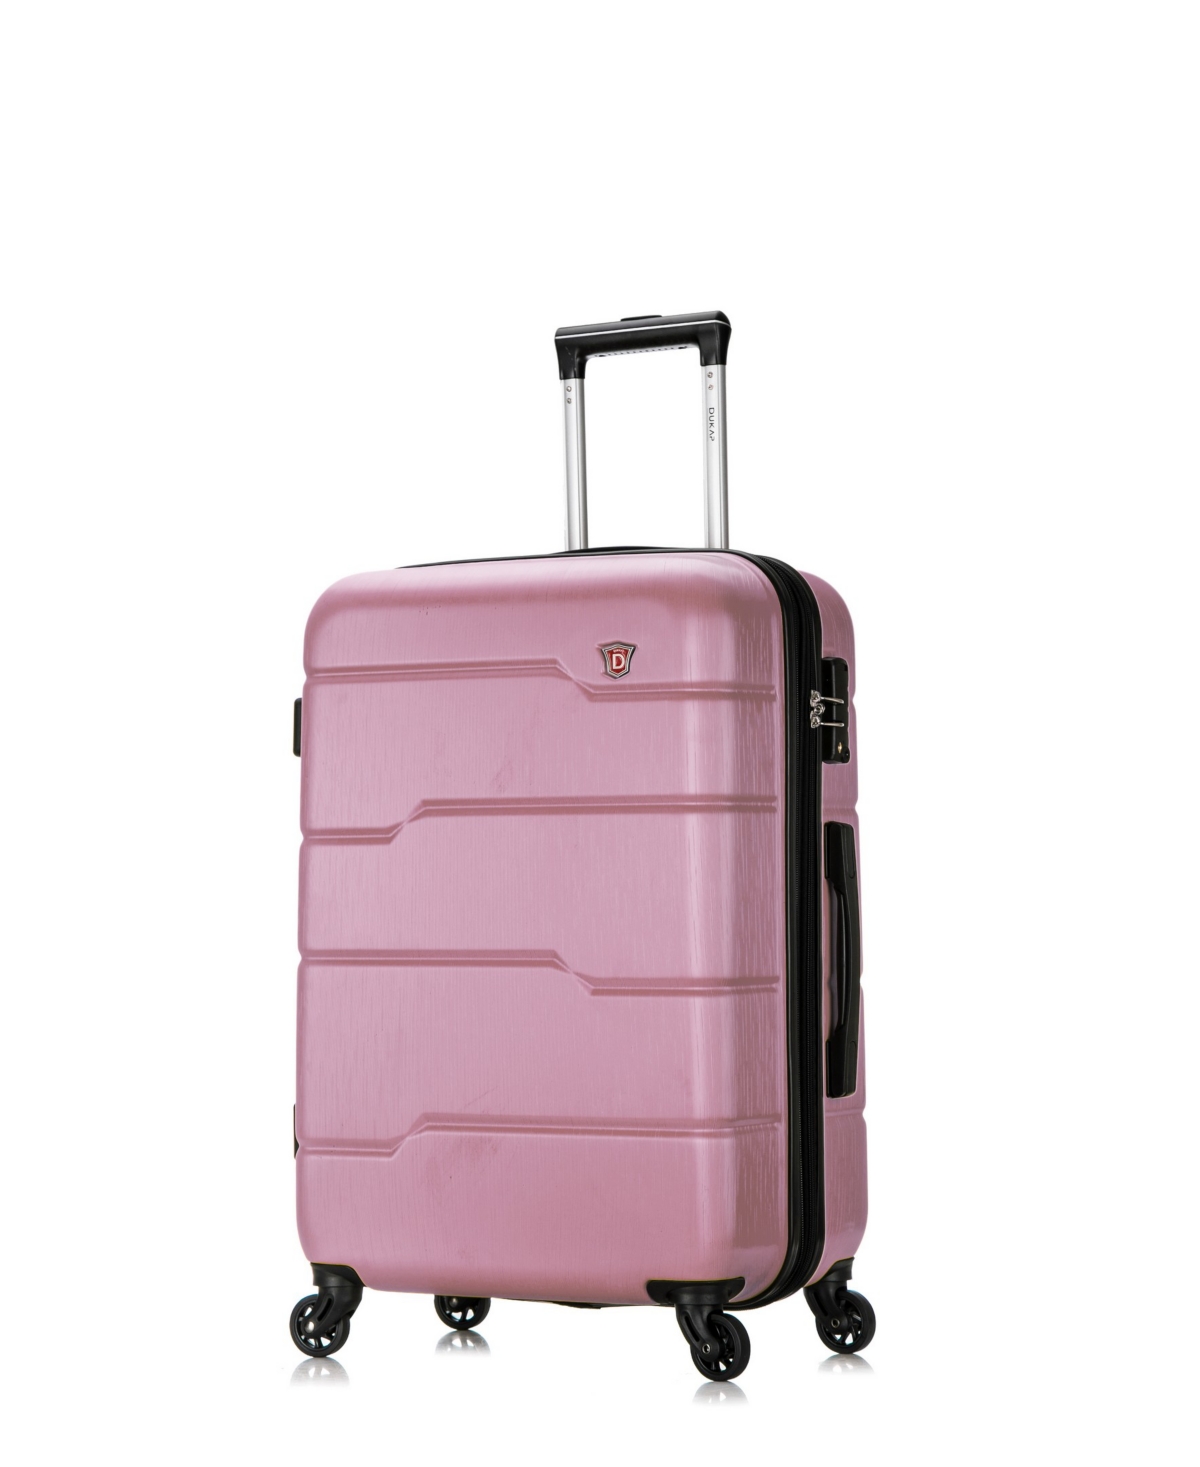 Rodez 24" Lightweight Hardside Spinner Luggage - Rose Gold